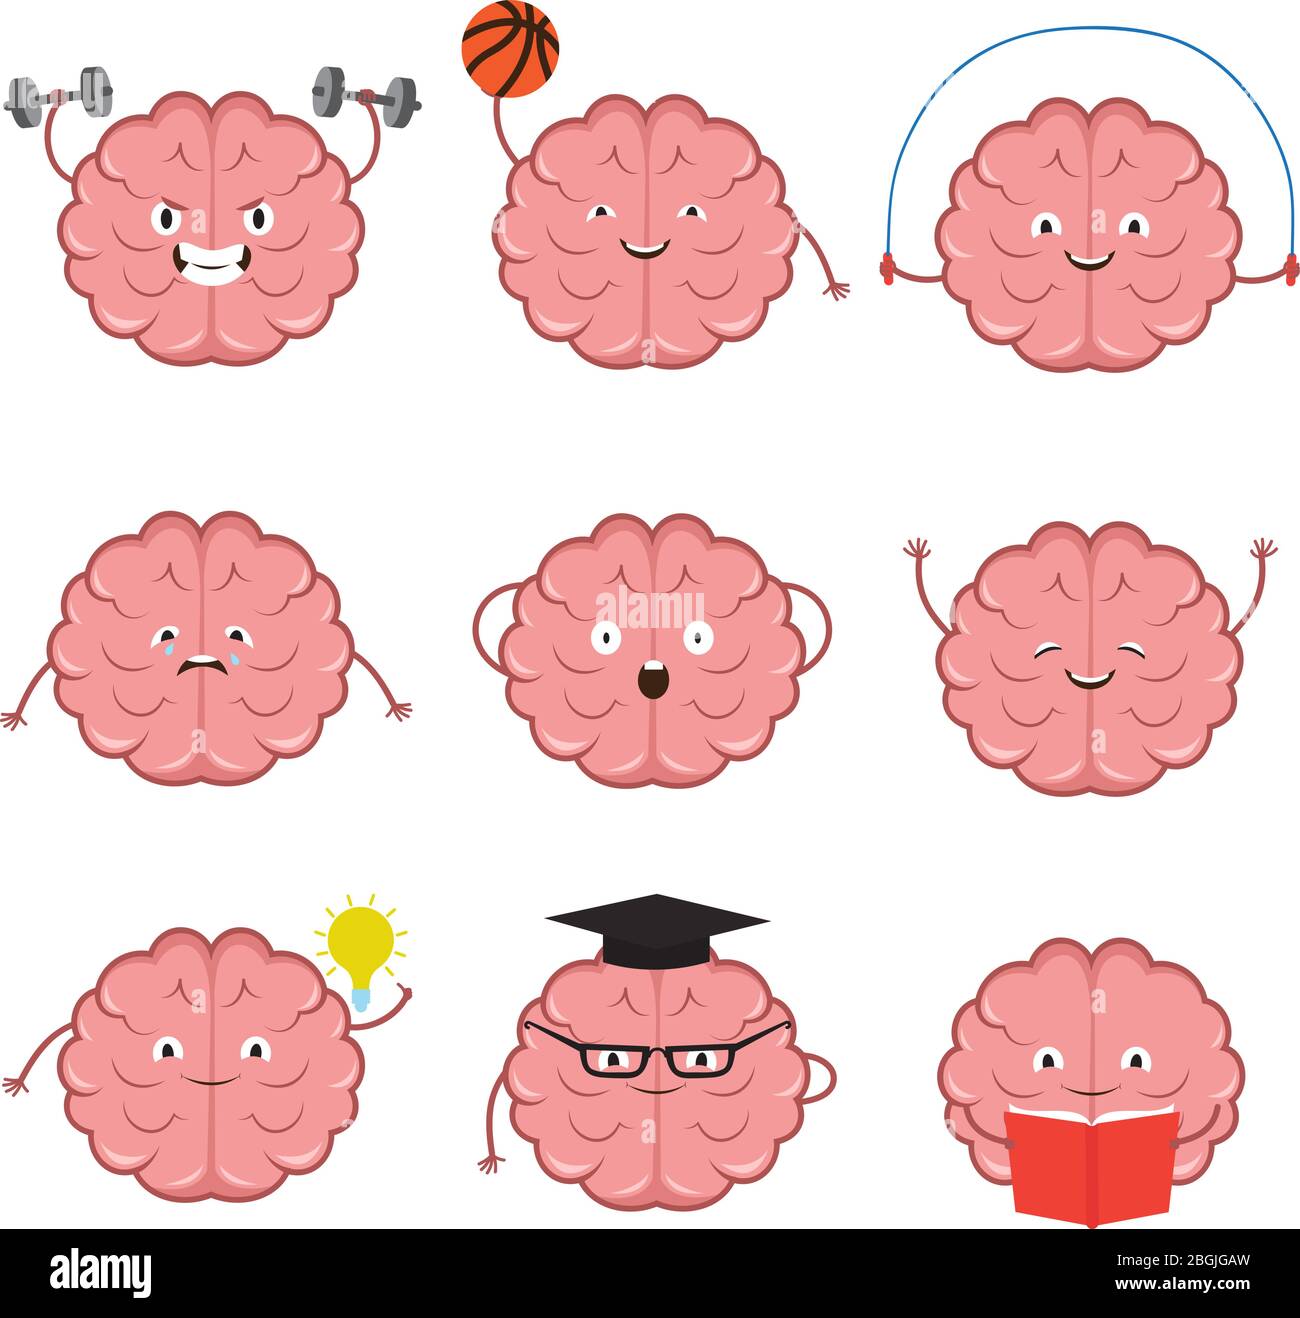 Starke, gesunde, Sport und intelligente Gehirn Vektor-Cartoon-Figuren gesetzt. Sport Gehirn, Training und Fitness-Übung, Intelligenz Mind Train Illustration Stock Vektor